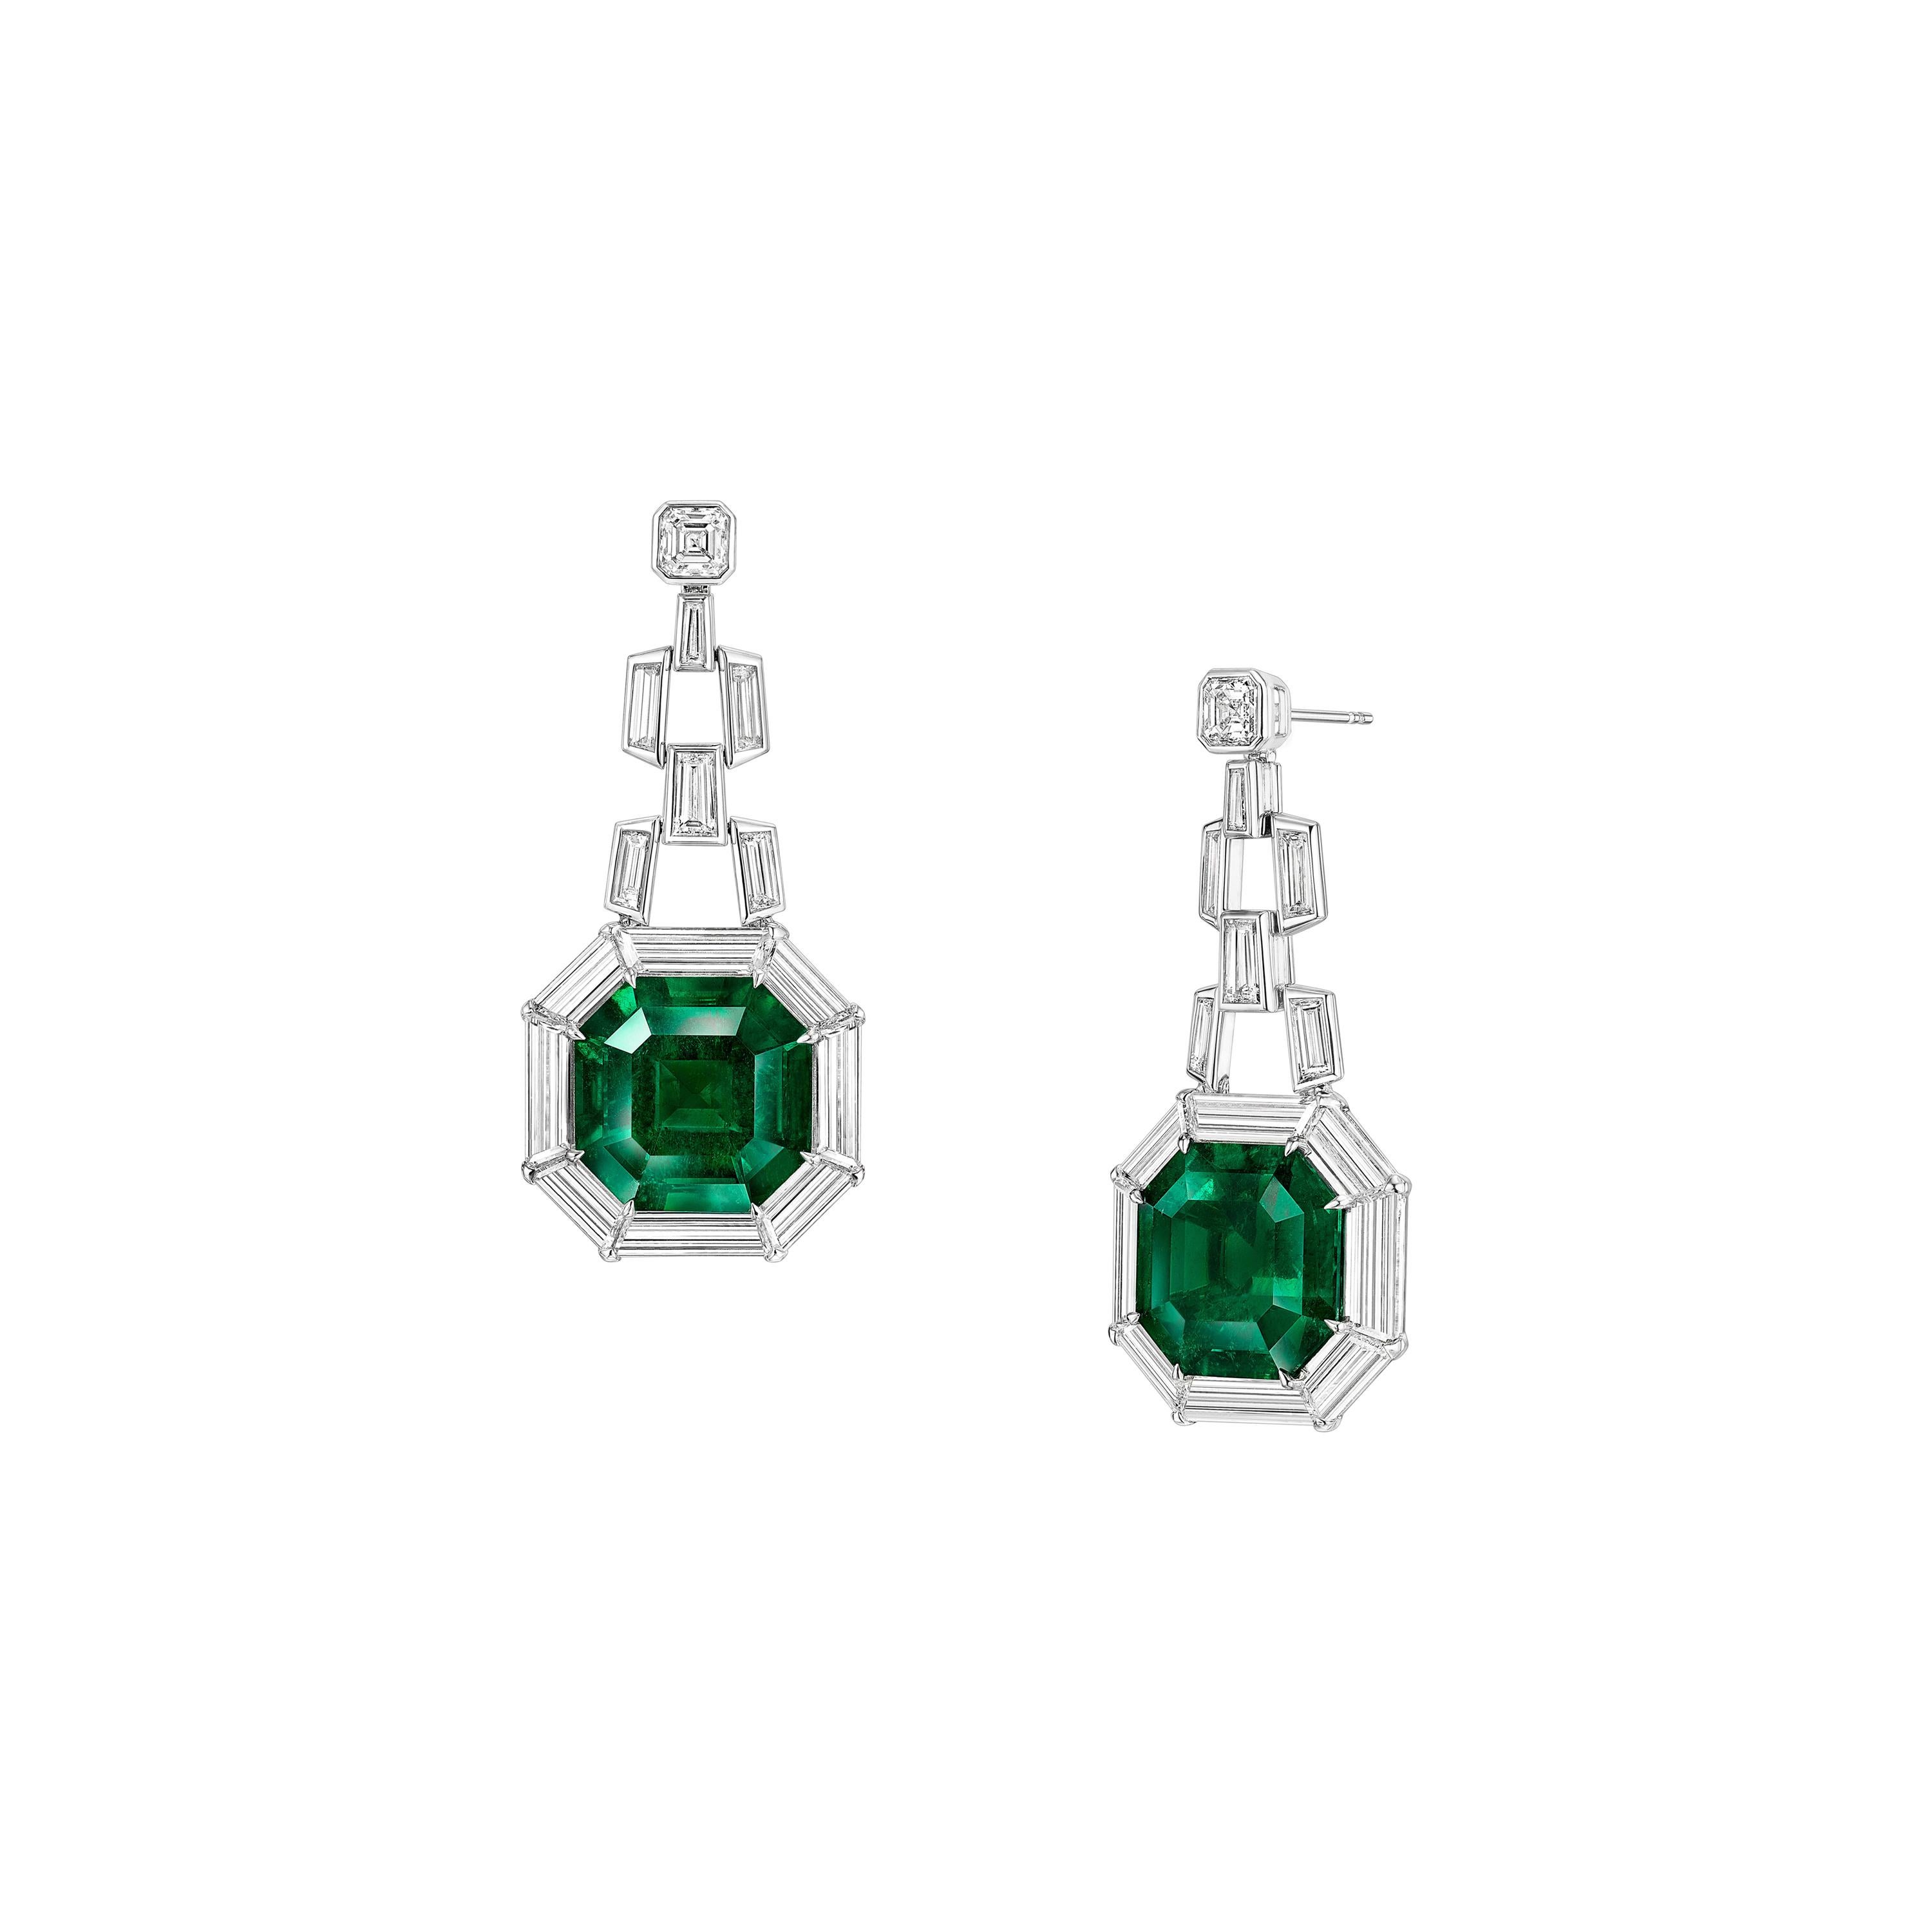 Gubelin Certified 35.61 Carat Colombian Emerald Art Deco Style Earrings 18k Gold For Sale